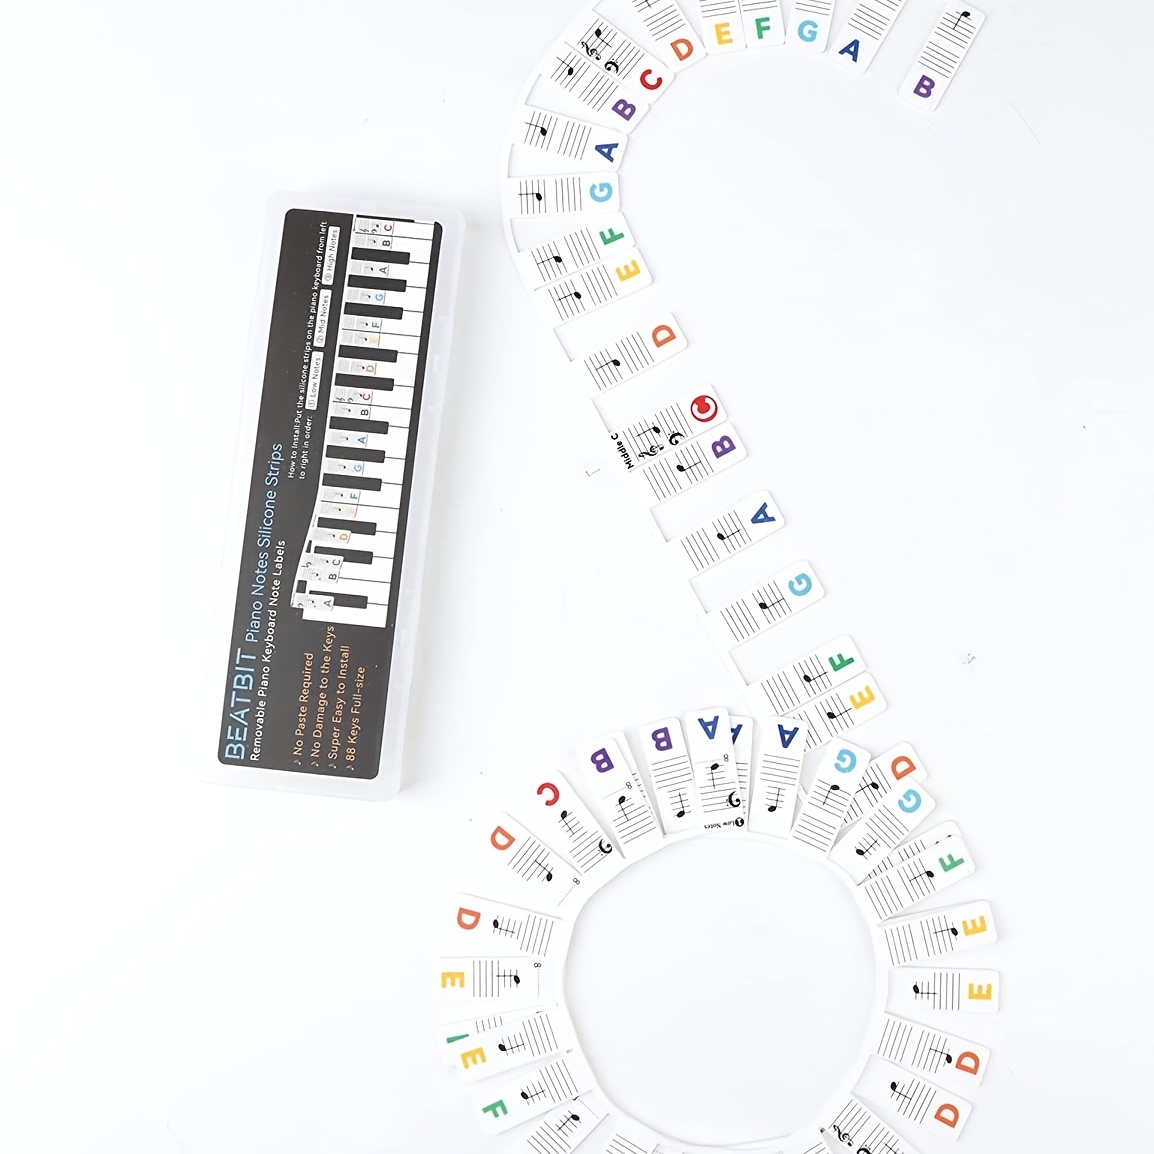 Guides en couleur facilitant le repérage des notes sur le piano